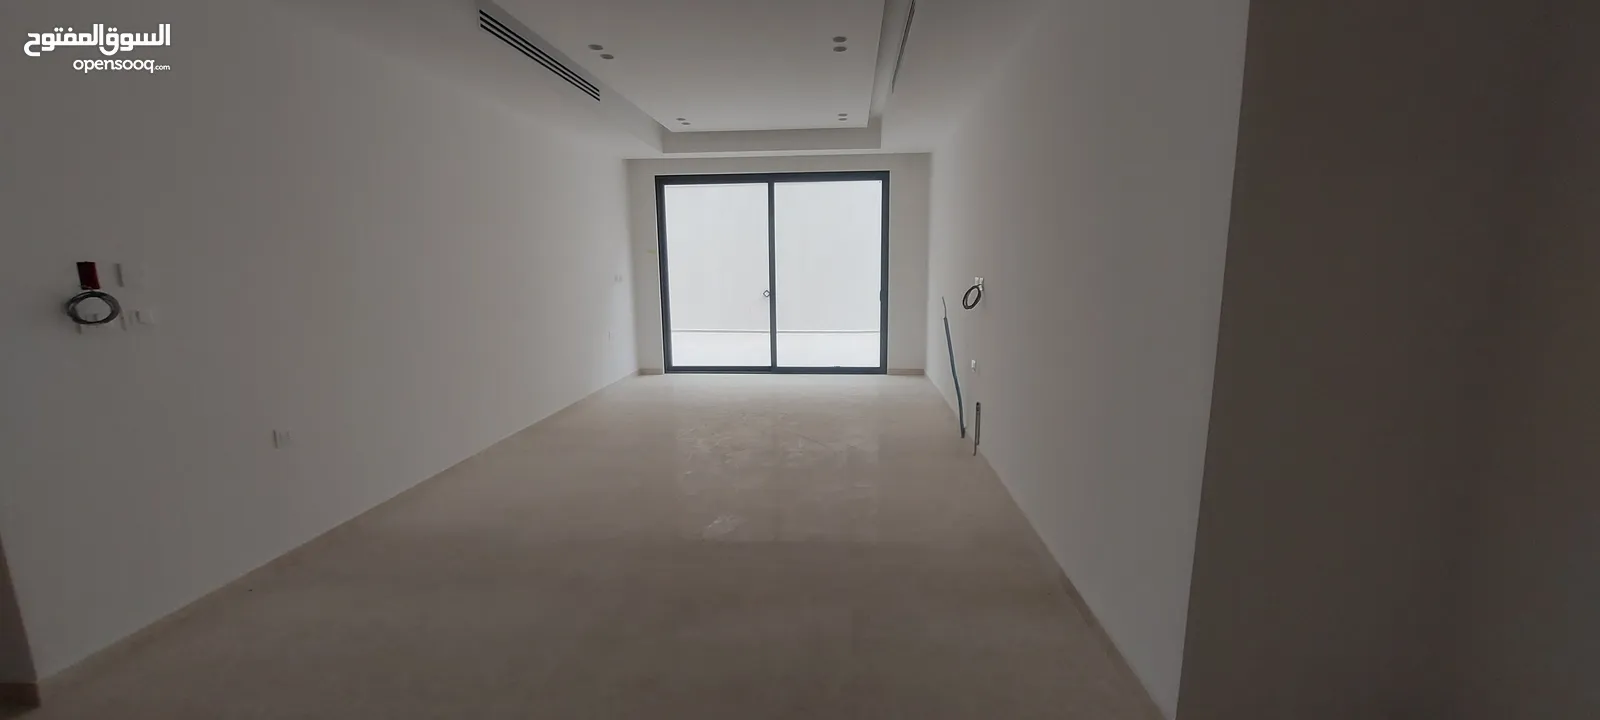 شقة طابق شبه ارضي للبيع في عبدون 235 متر مع ساحة خارجية كبيرة